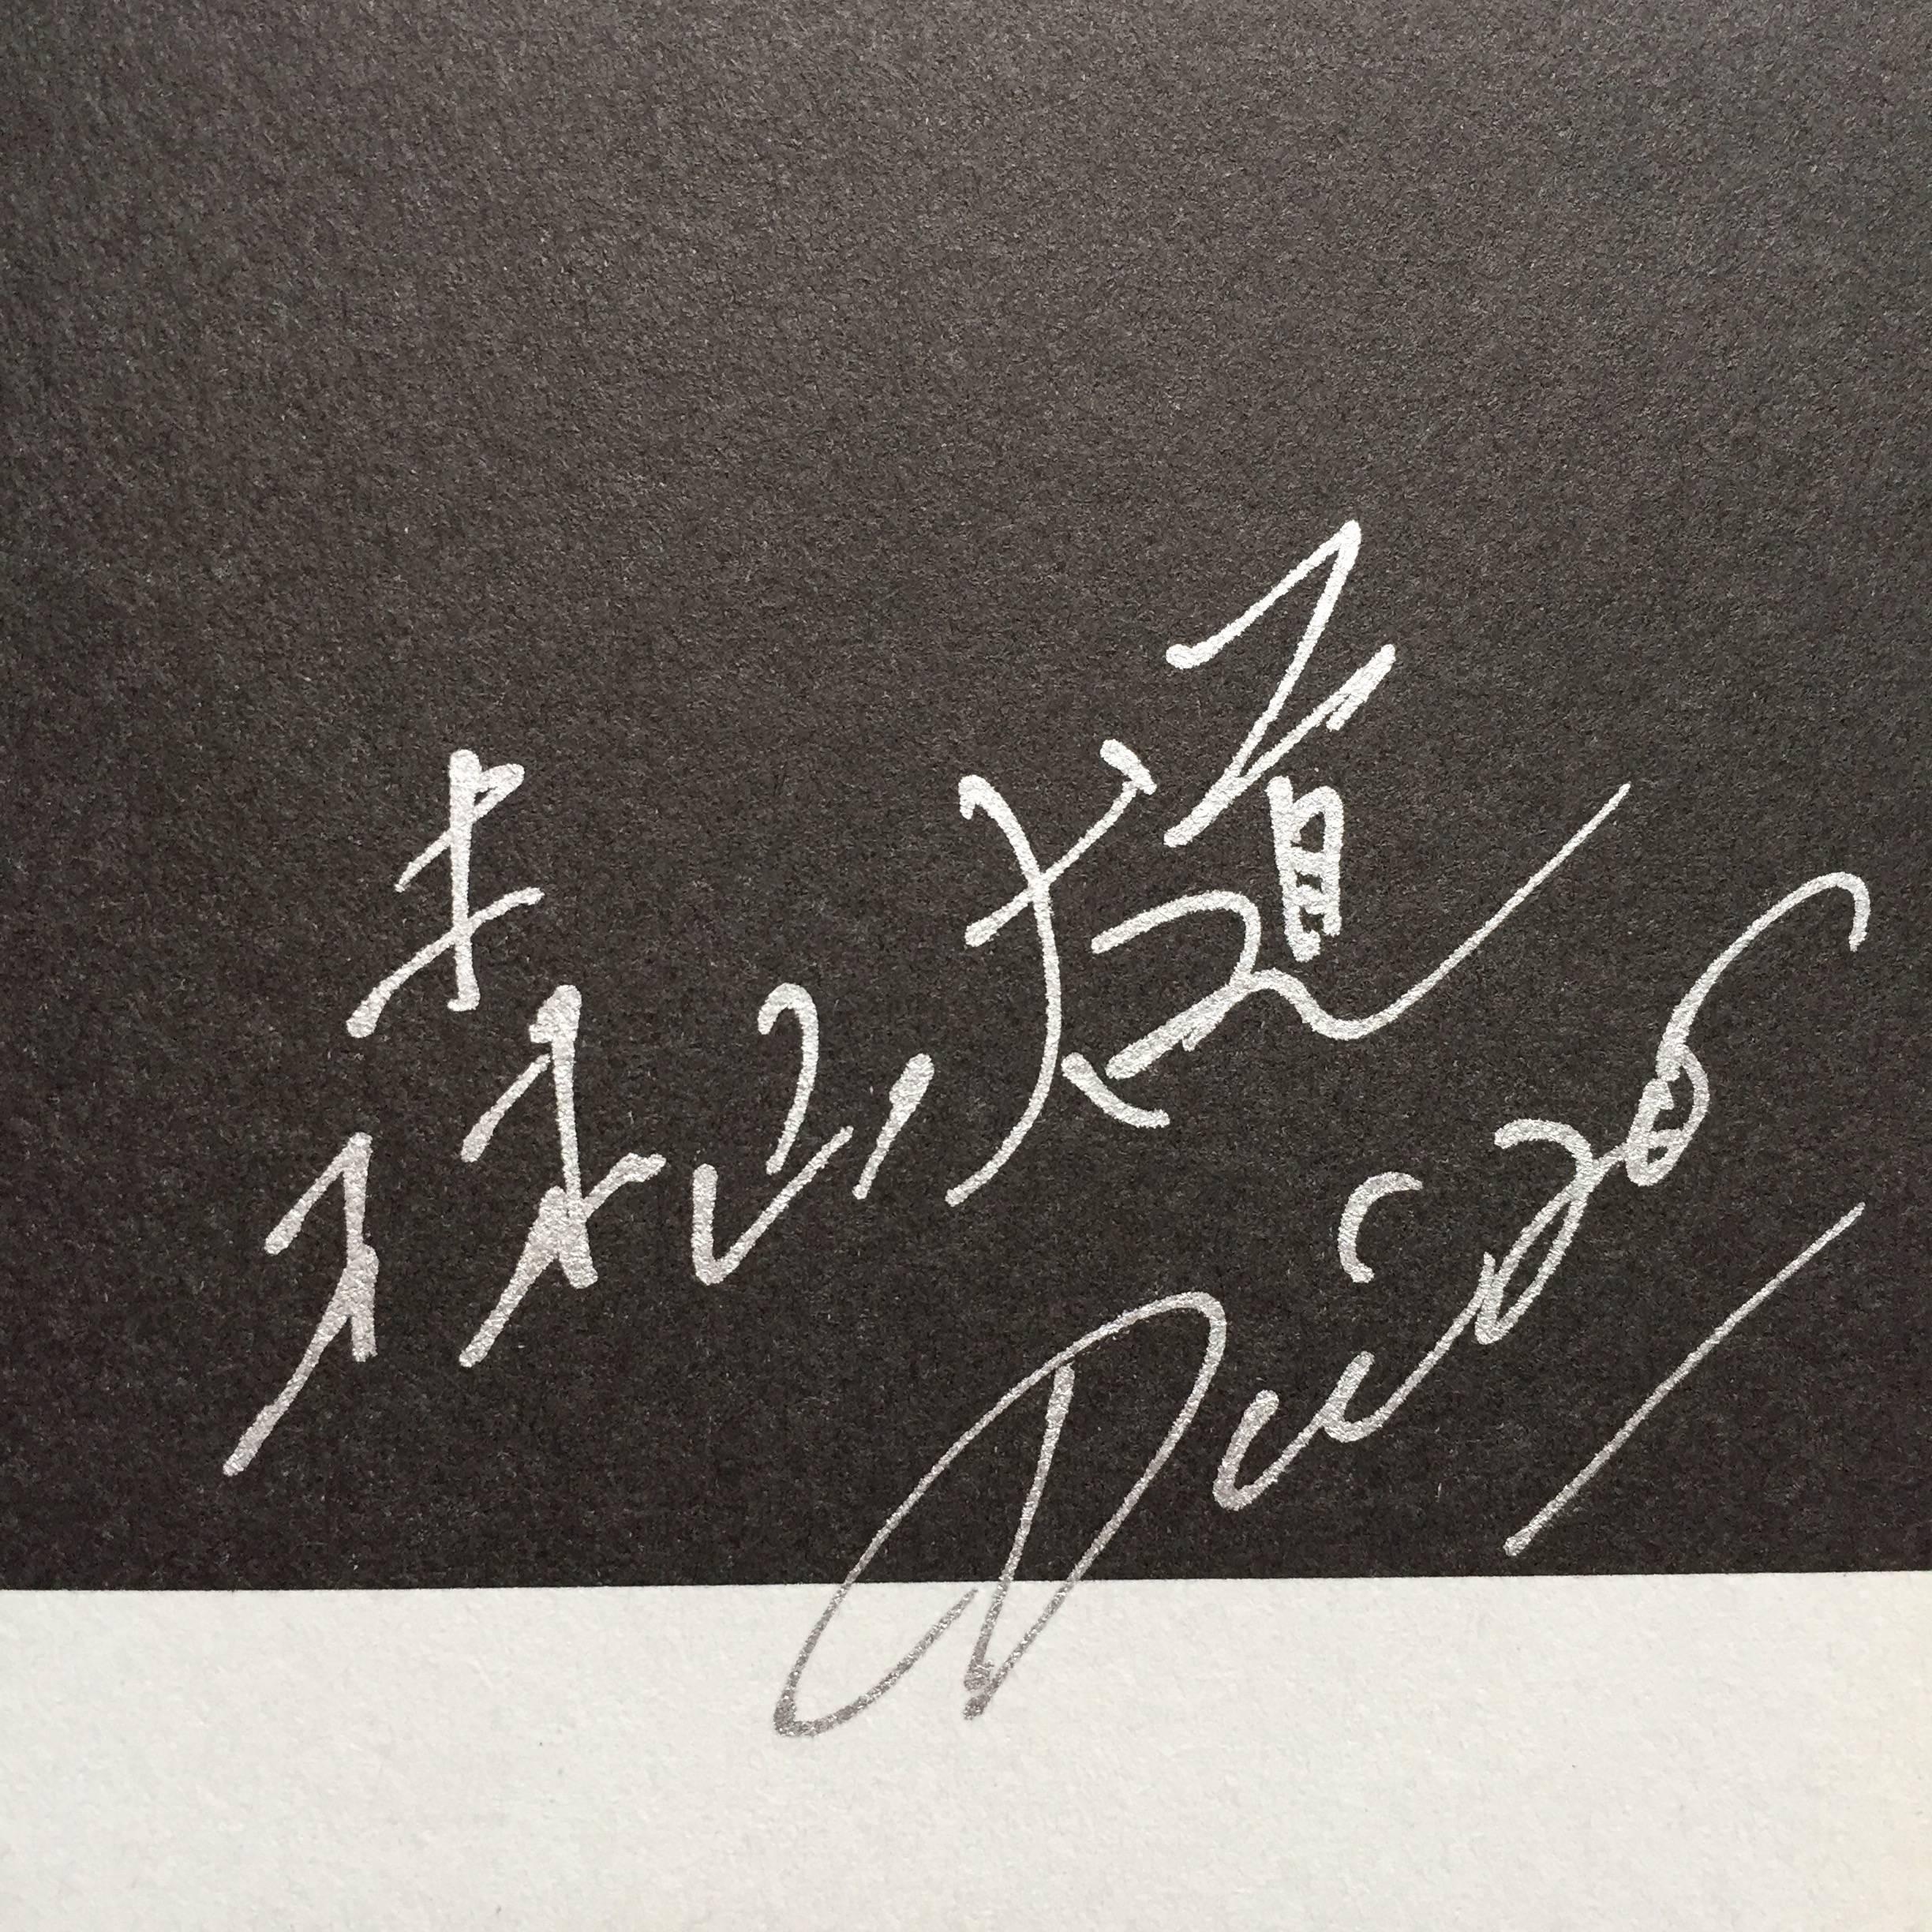 Première édition signée, publiée par Kodansha, Japon, 2009.

Signé par Daido Moriyama sur la page de titre, ce petit livre de photos au format 